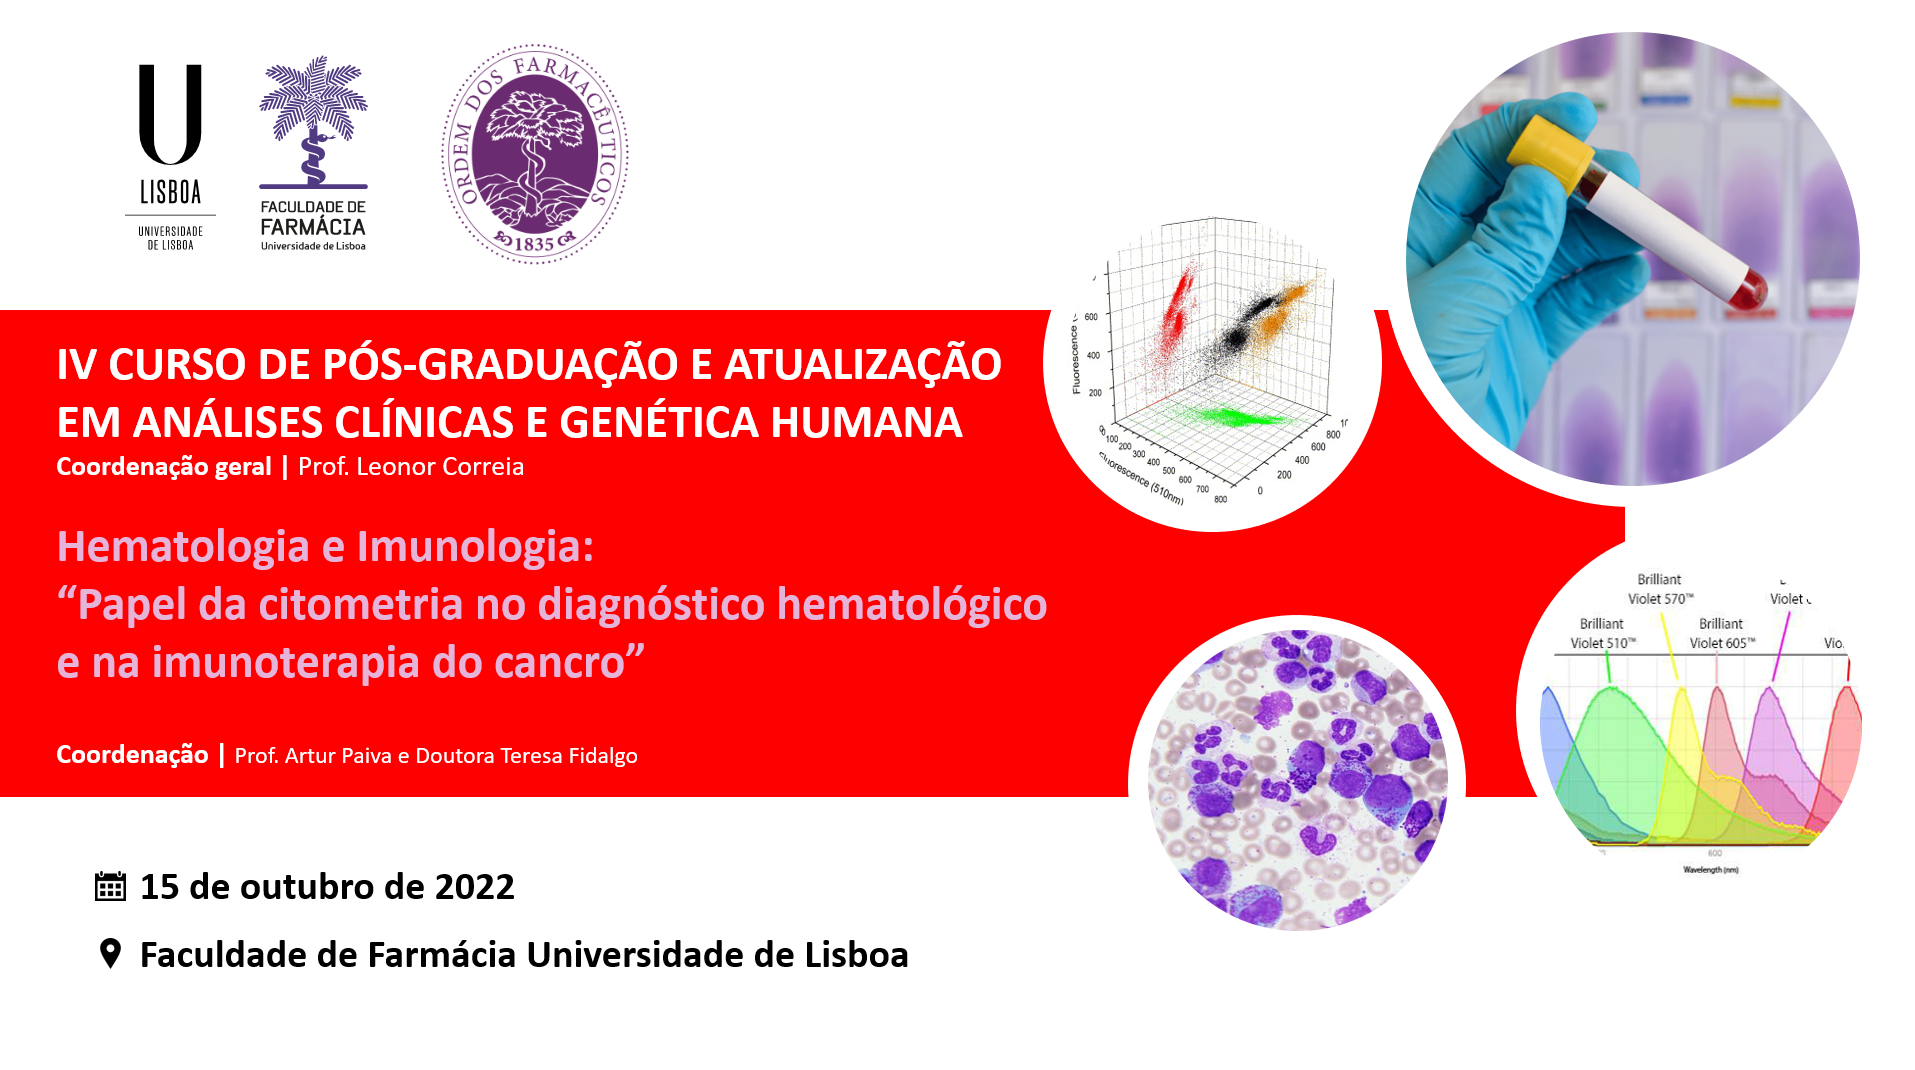 IV Curso de Pós-Graduação em Análises Clínicas: Hematologia e Imunologia – Papel da citometria no diagnóstico hematológico e na imunoterapia do cancro